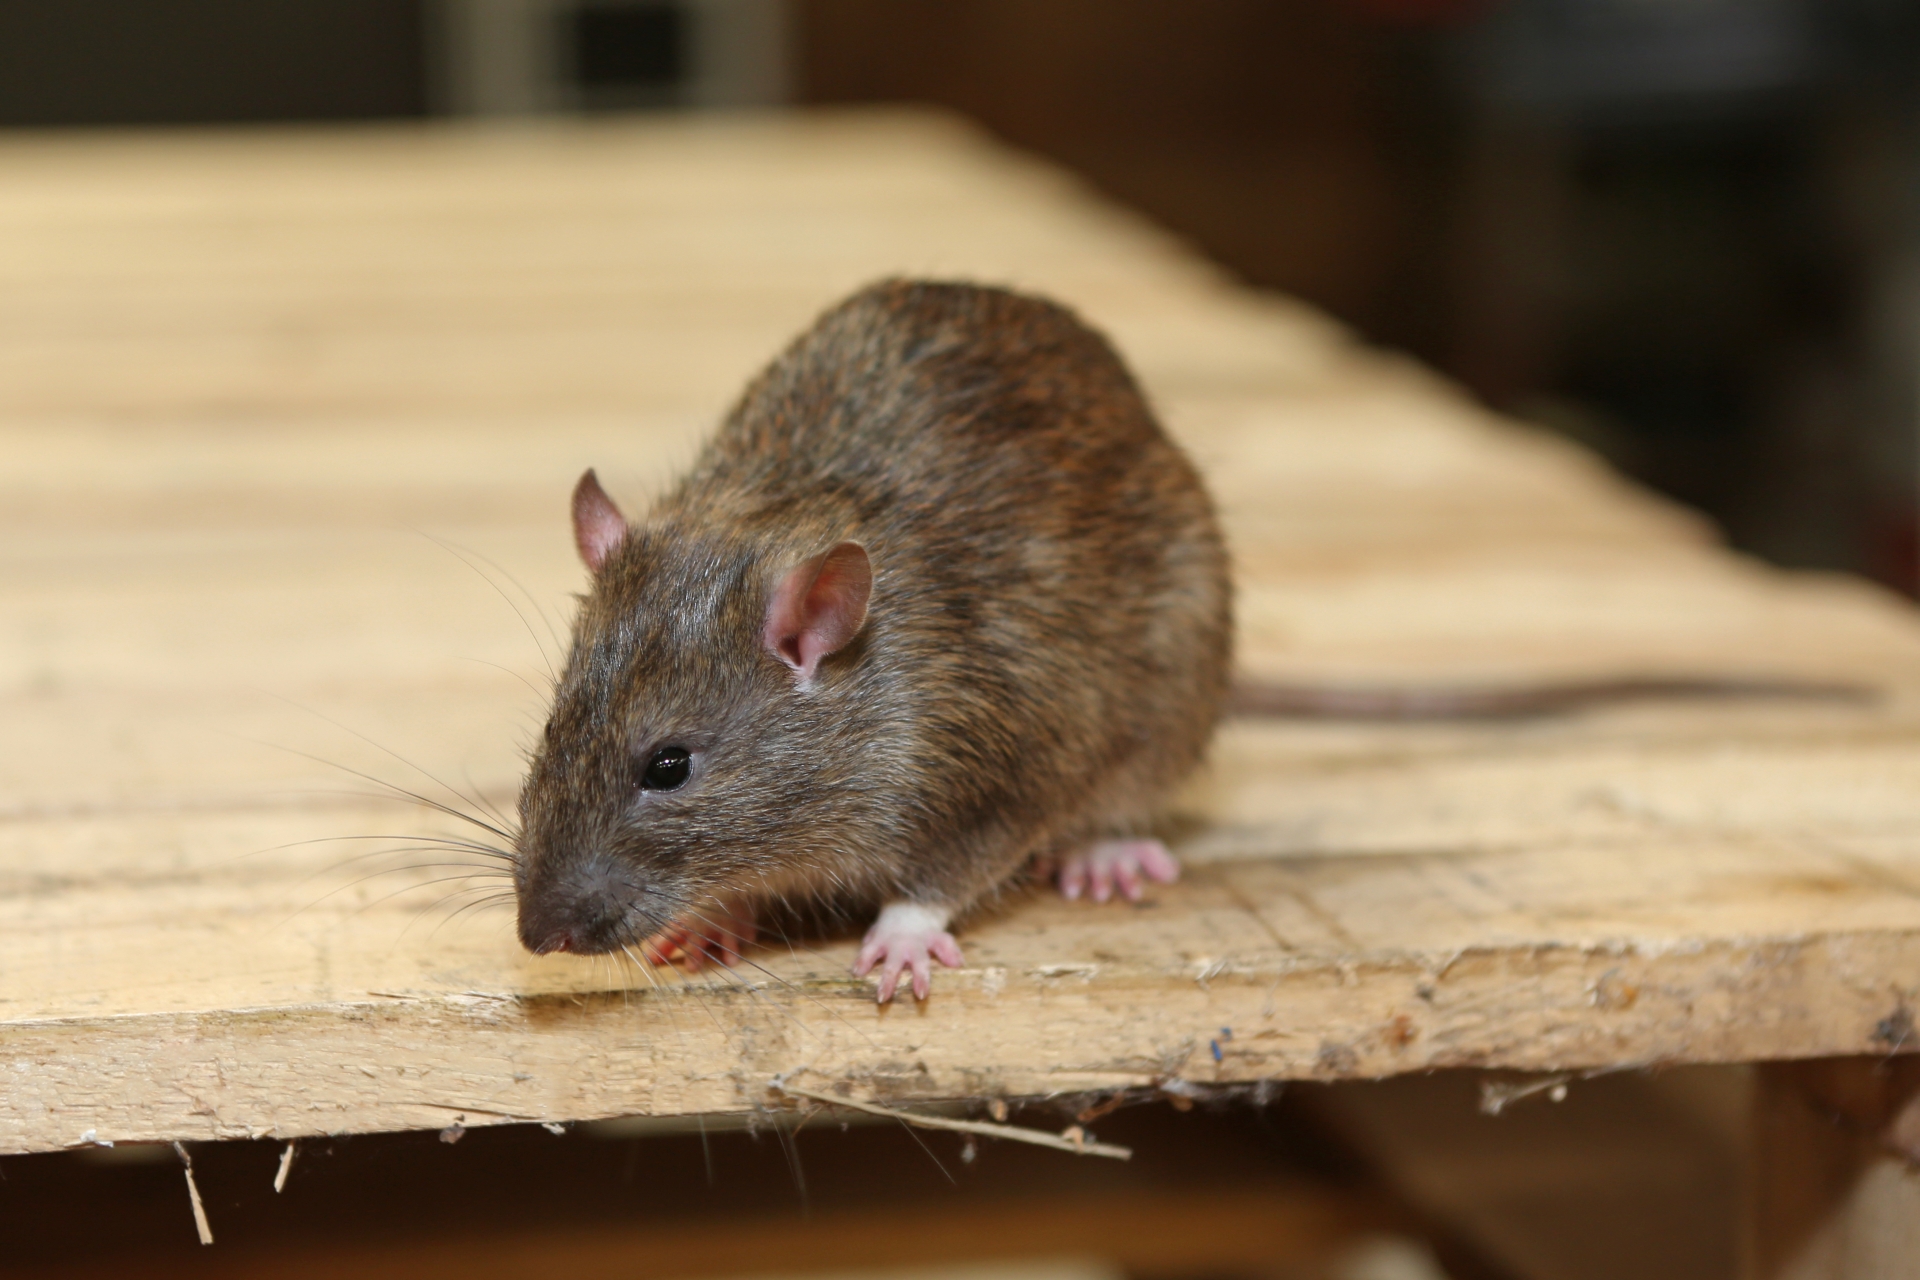 Rat extermination, Pest Control in Tottenham, N17. Call Now 020 8166 9746